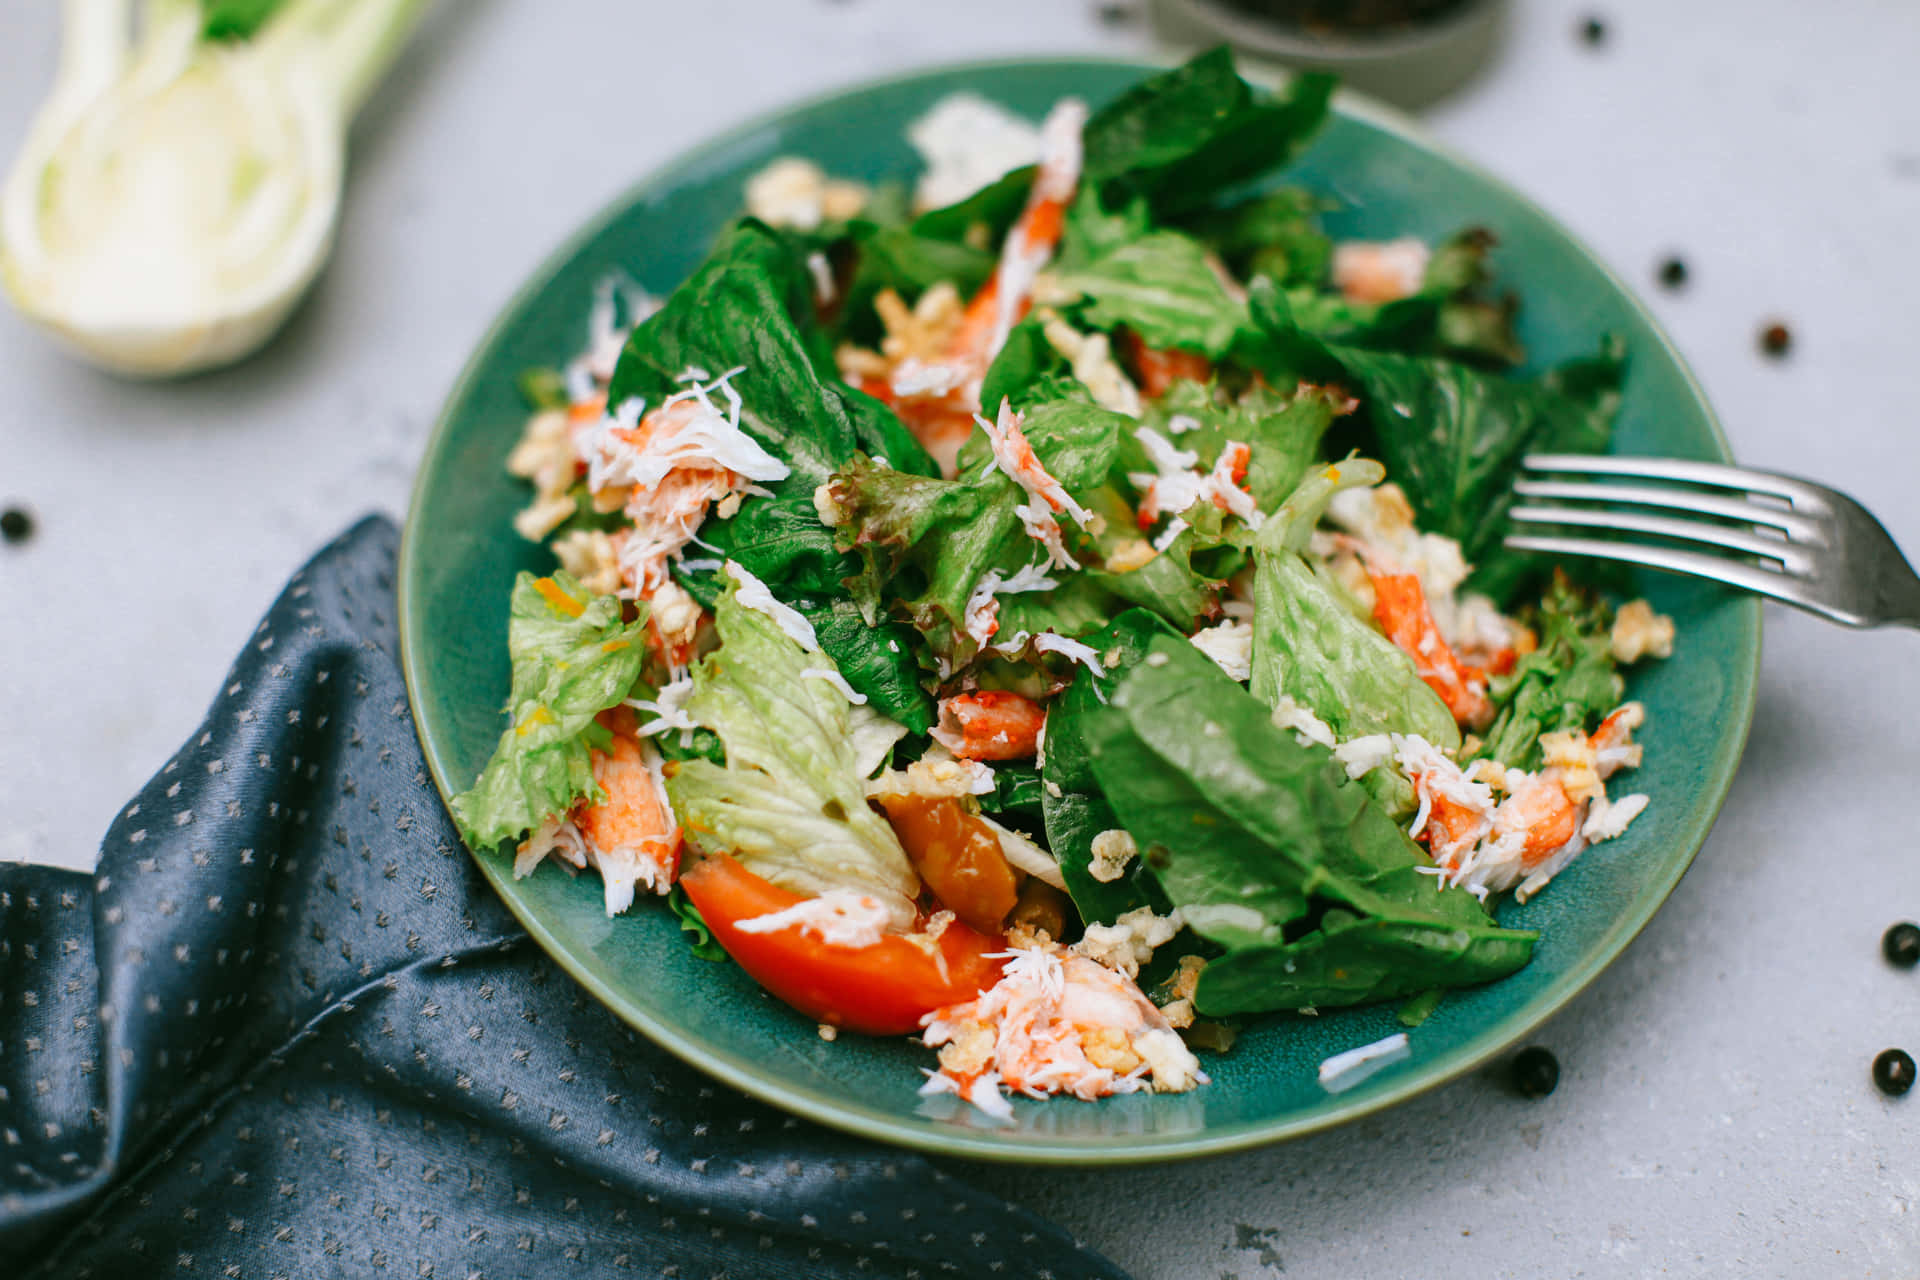 Enjoy a fresh and flavorful salad!